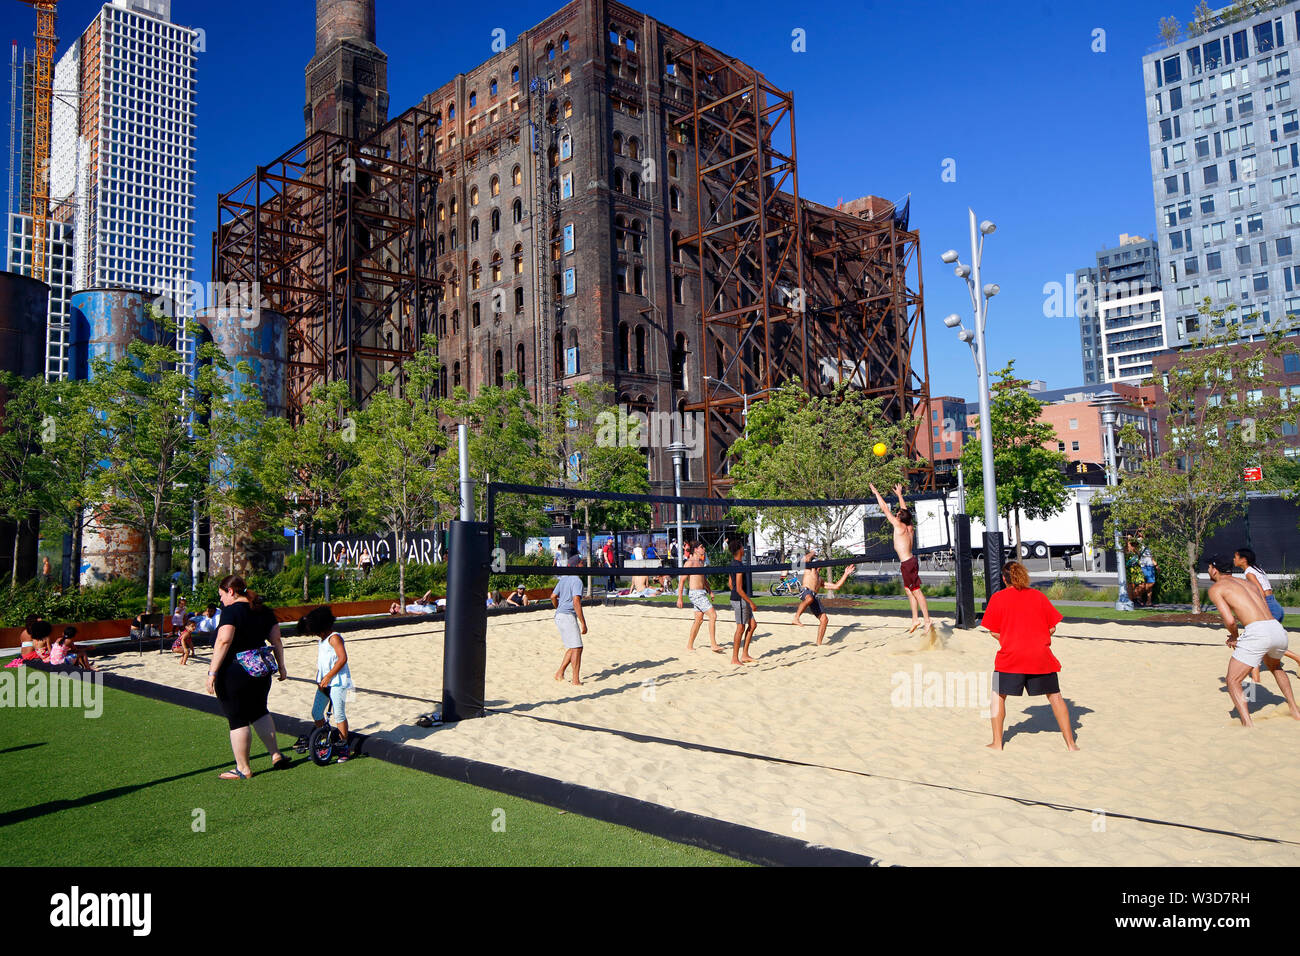 Les gens à jouer au volleyball de plage au Domino Park dans le quartier de Williamsburg, Brooklyn, NY Banque D'Images